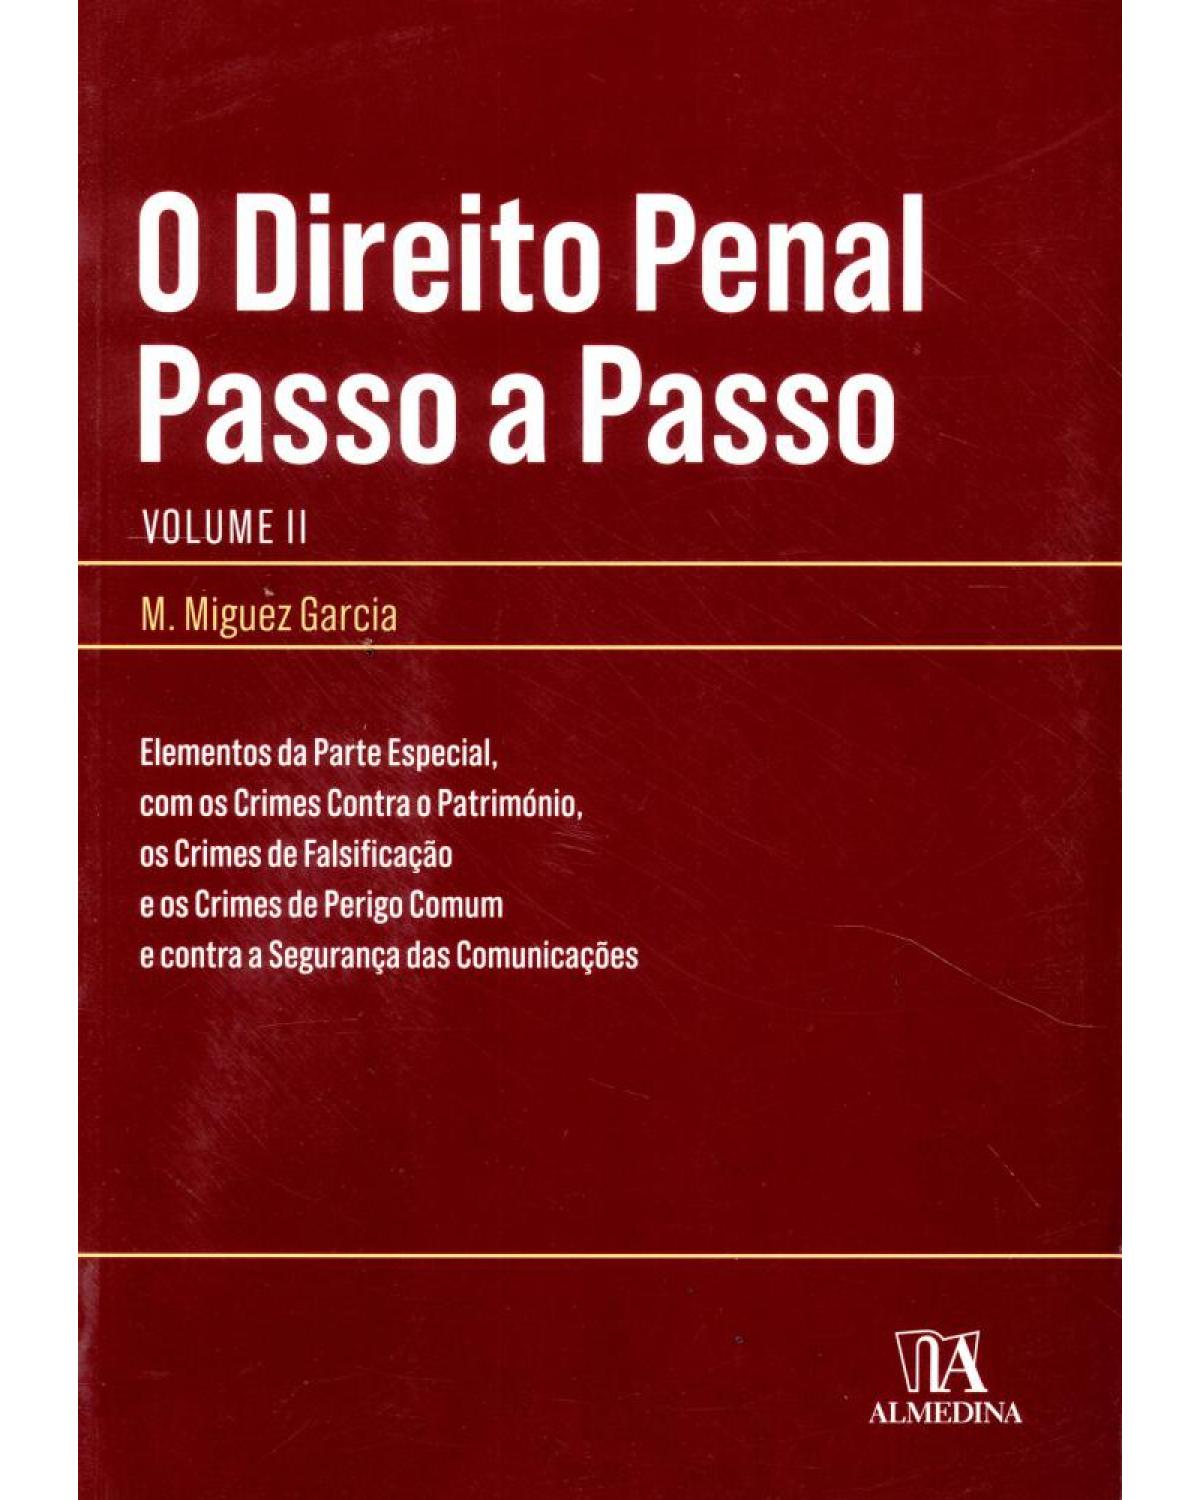 O direito penal passo a passo - Volume 2:  - 1ª Edição | 2011